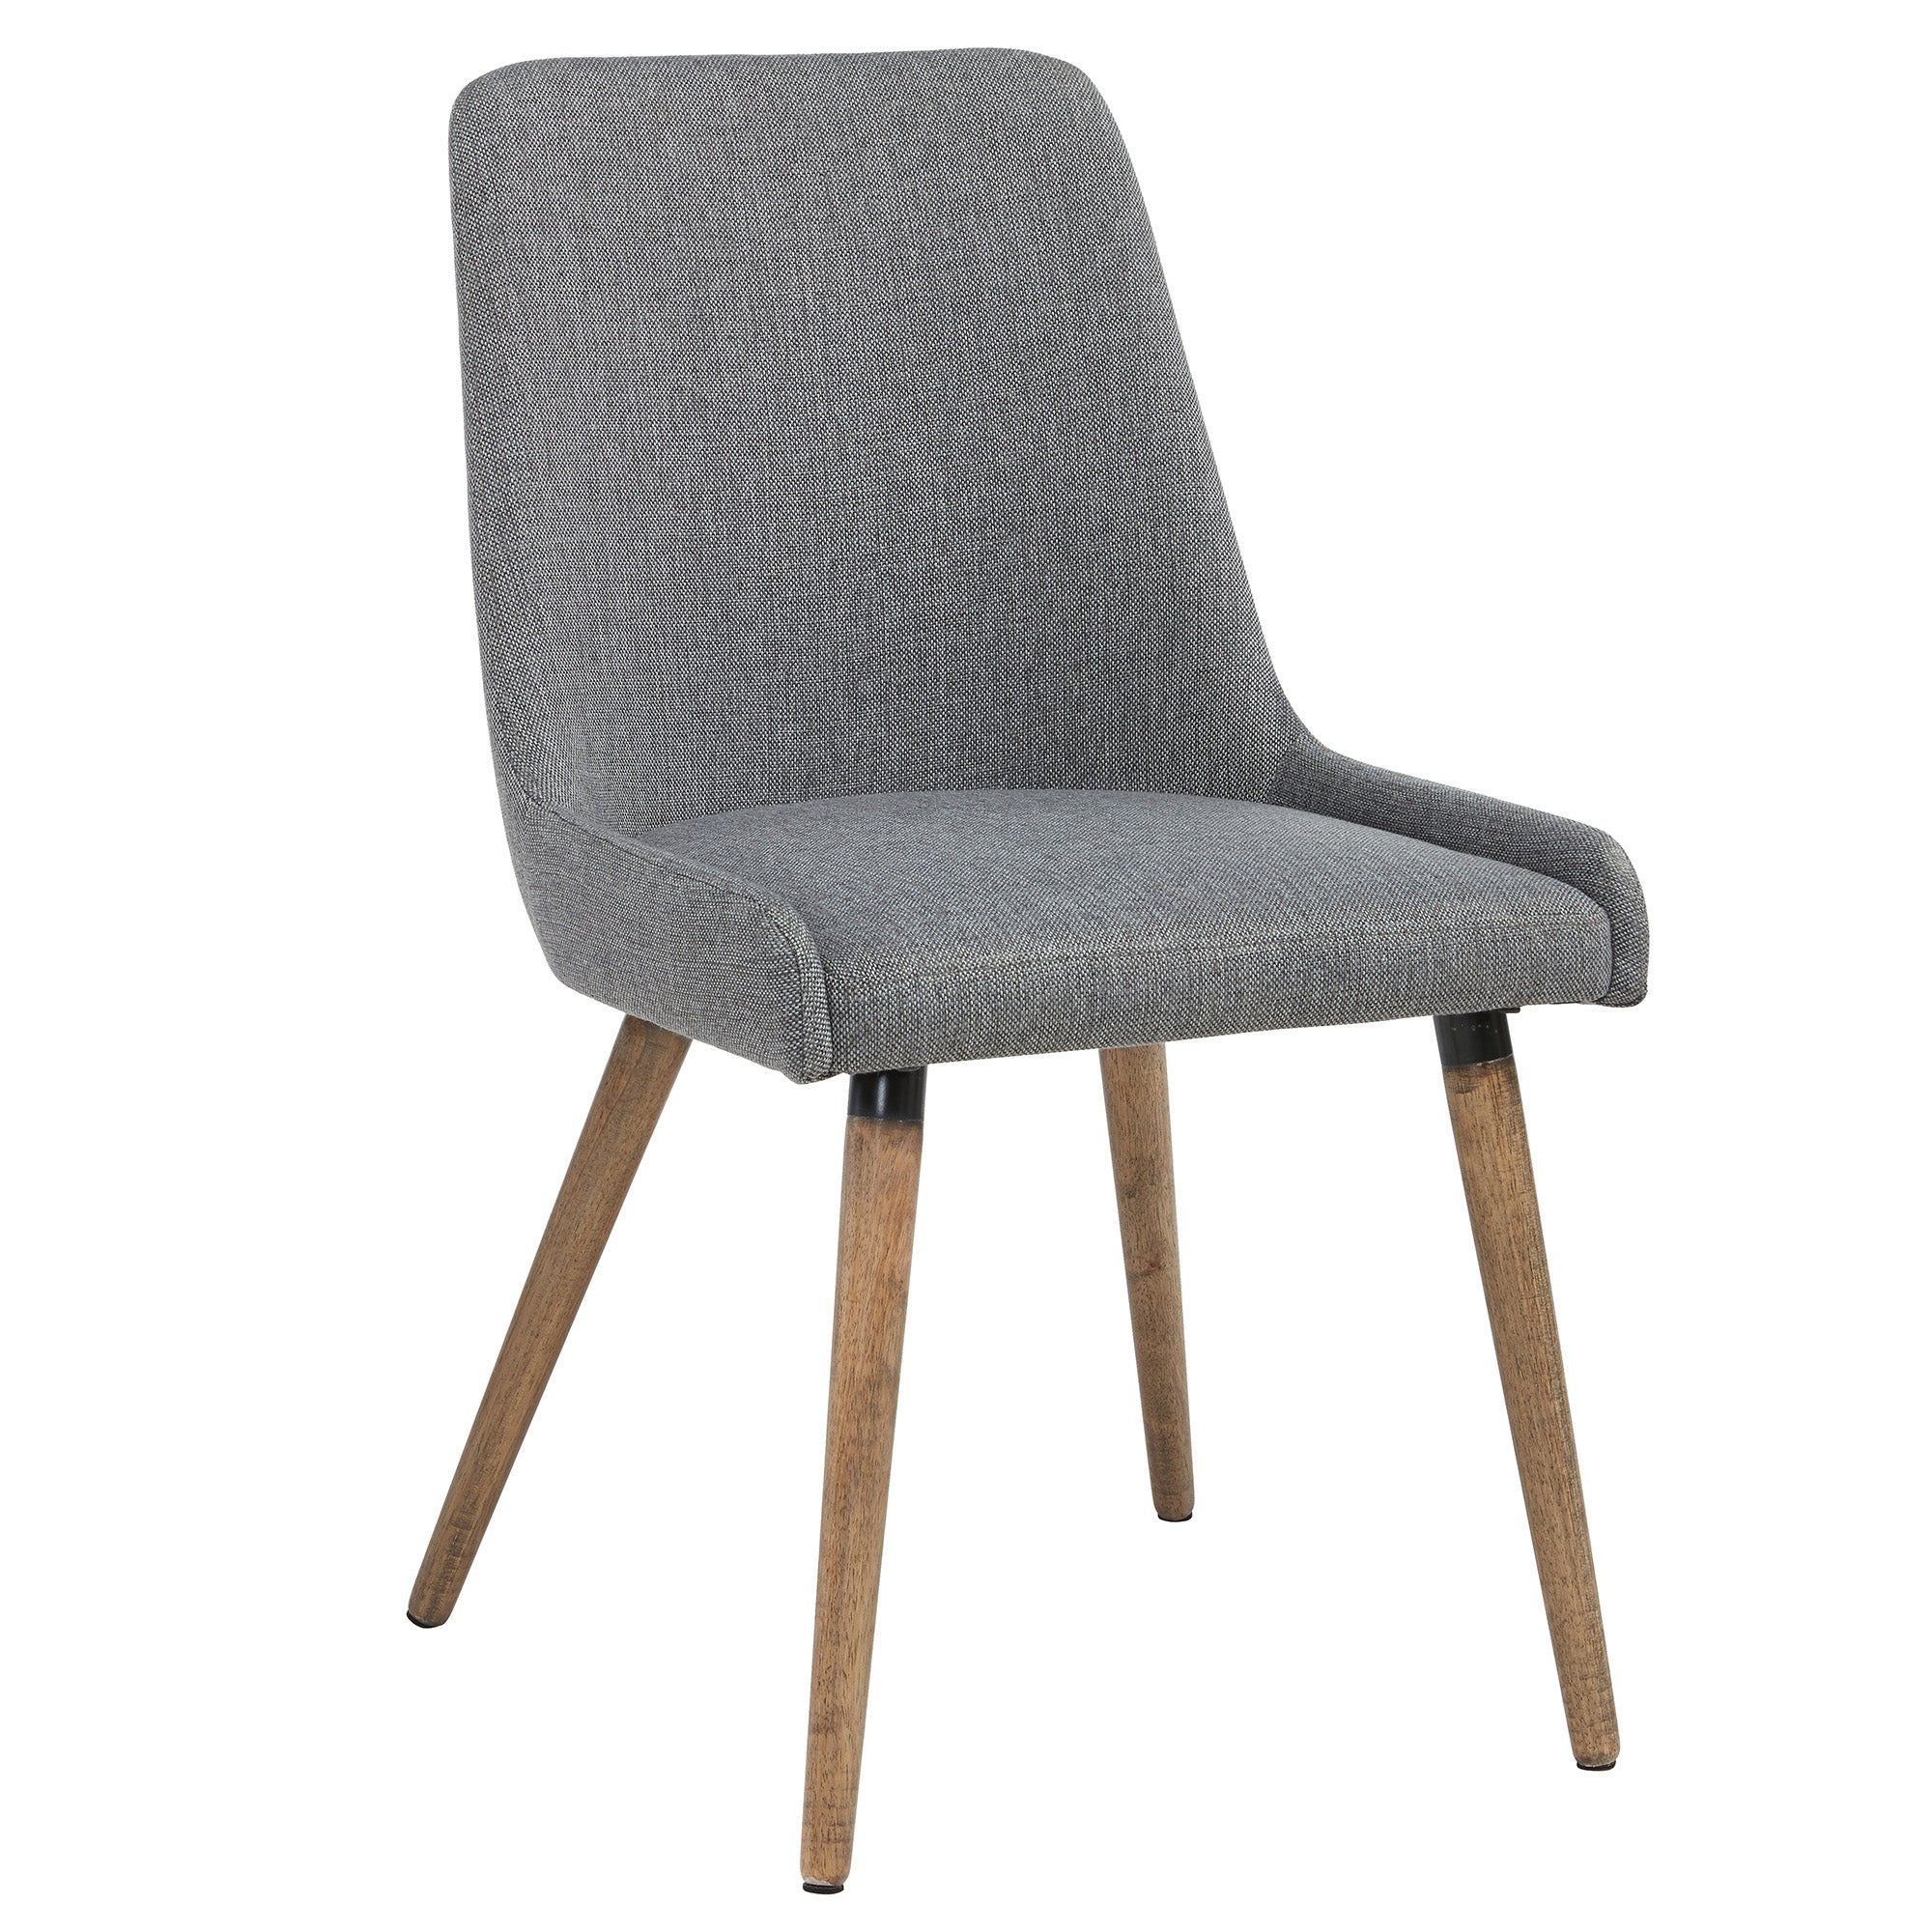 Mia Side Chair, set of 2 in Dark Grey/Grey Legs 202-247GY/DG